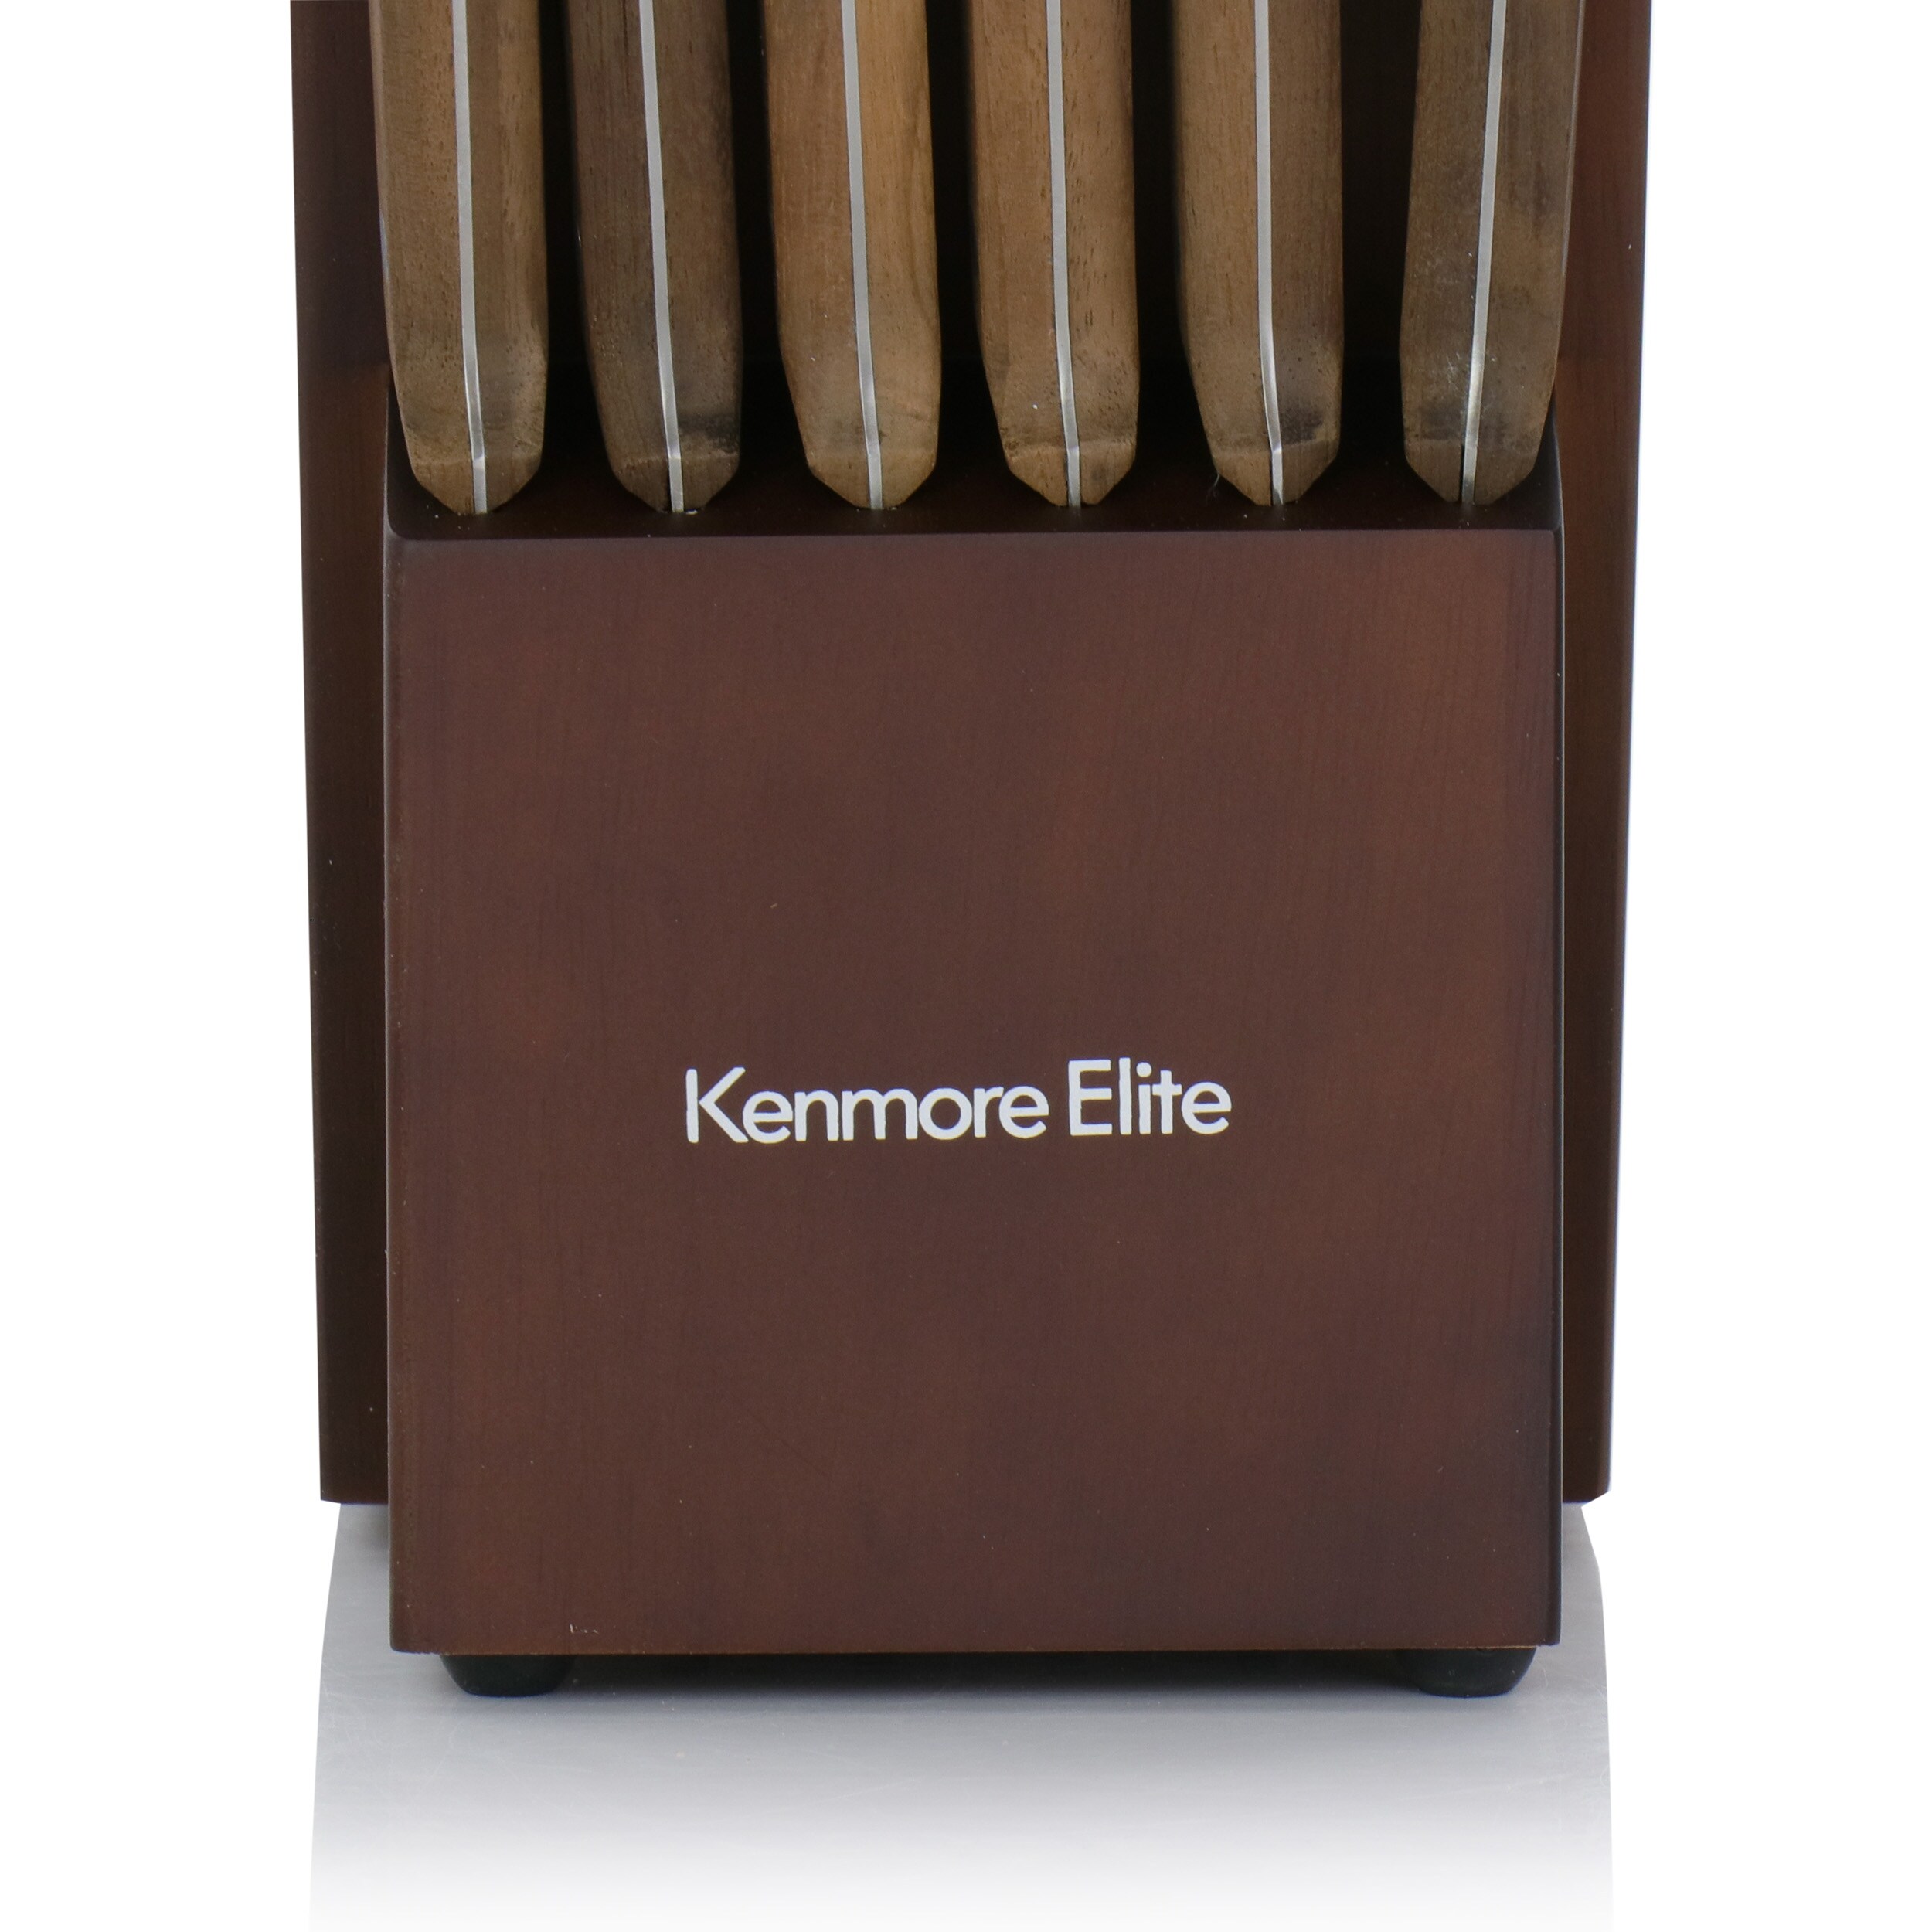 KENMORE ELITE Cooke 14- Piece Stainless Steel Knife Set in Dark